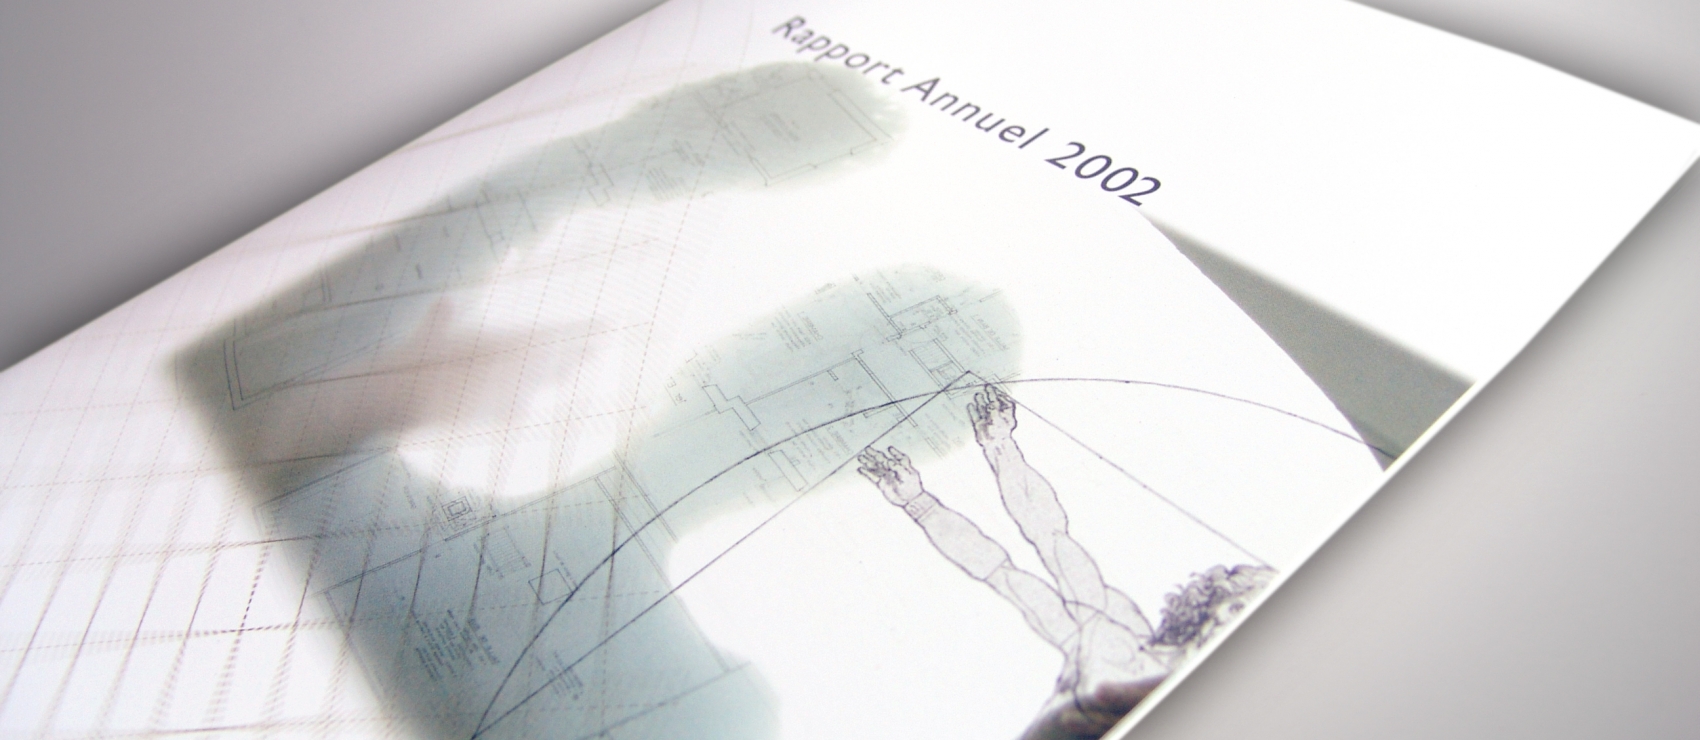 ANEC - Annual Report 2002